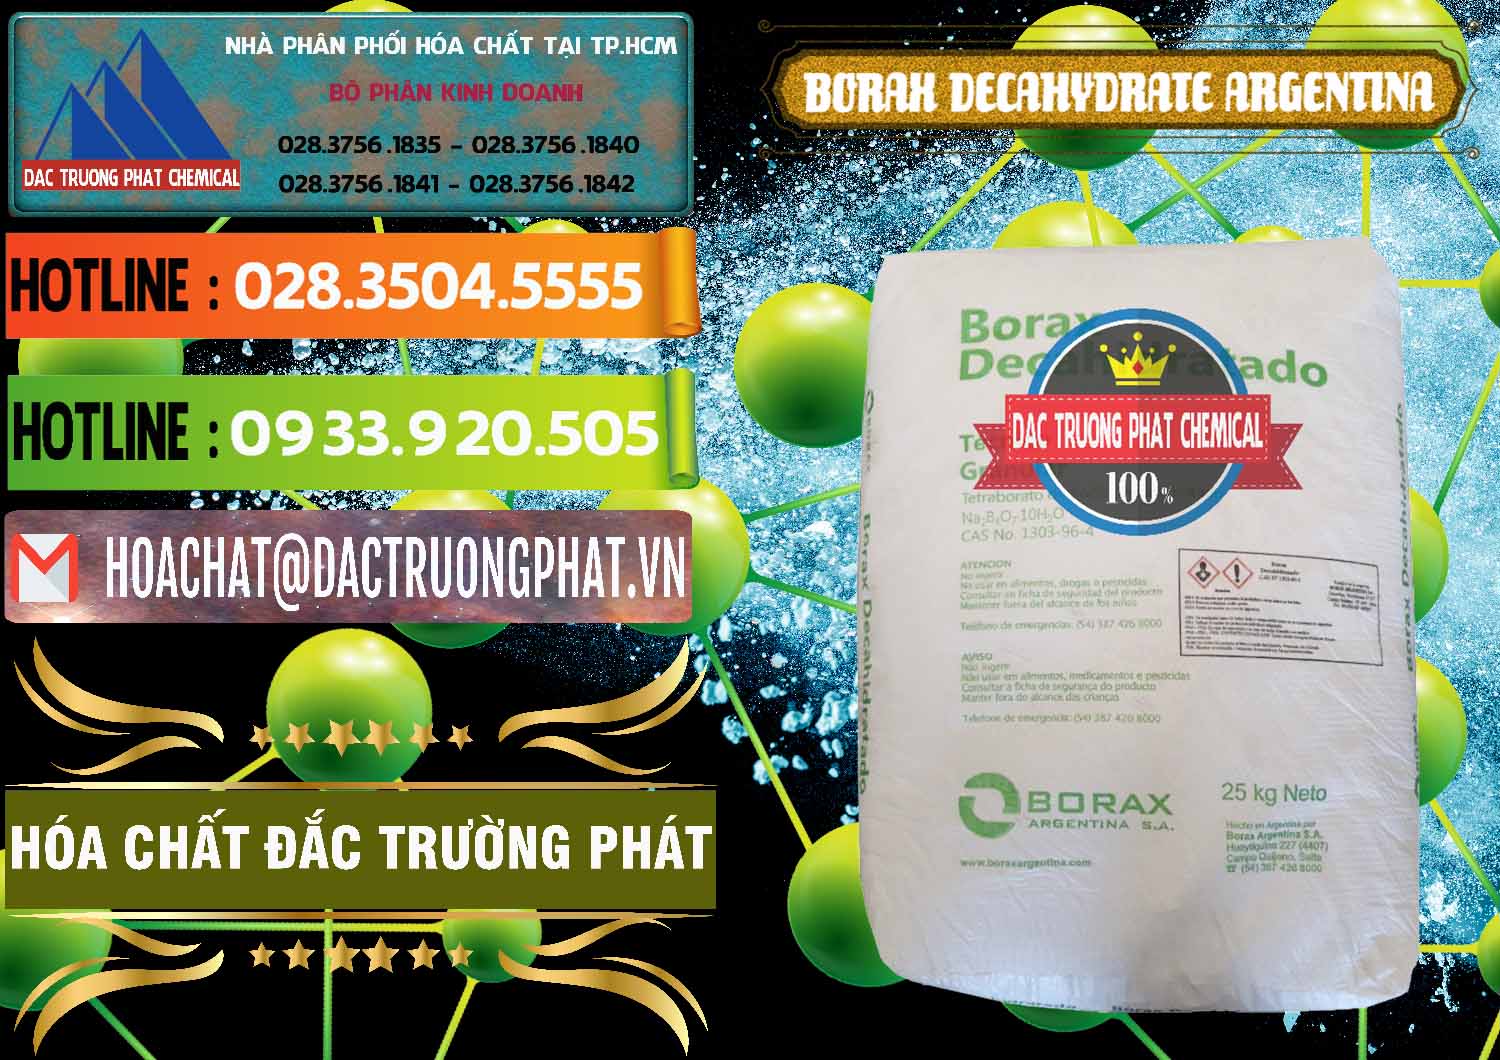 Nơi phân phối và bán Borax Decahydrate Argentina - 0446 - Công ty phân phối - cung ứng hóa chất tại TP.HCM - cungcaphoachat.com.vn